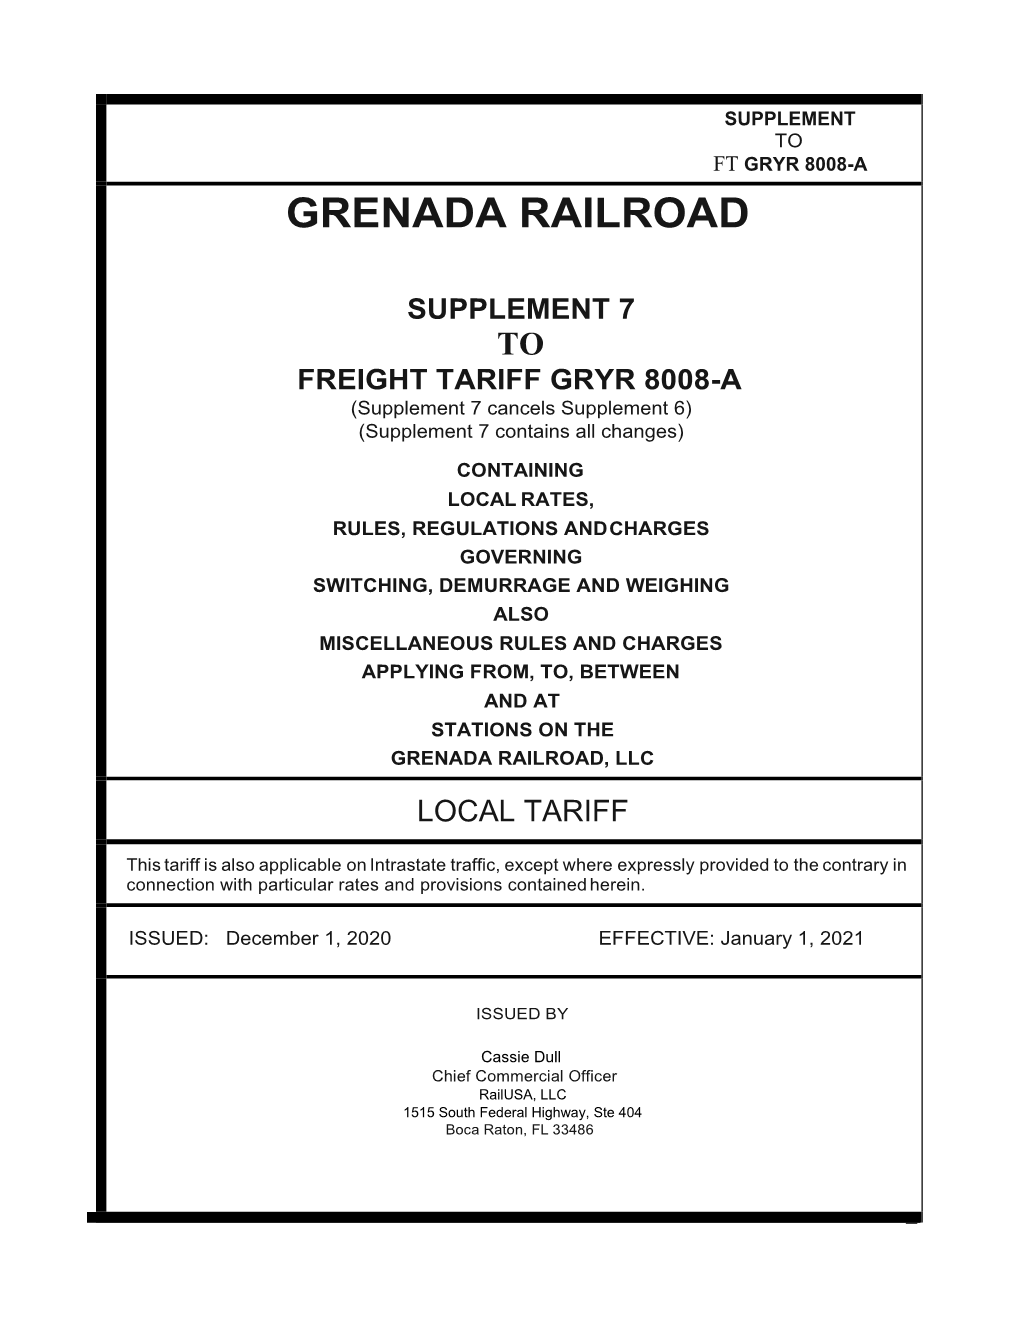 Grenada Railroad